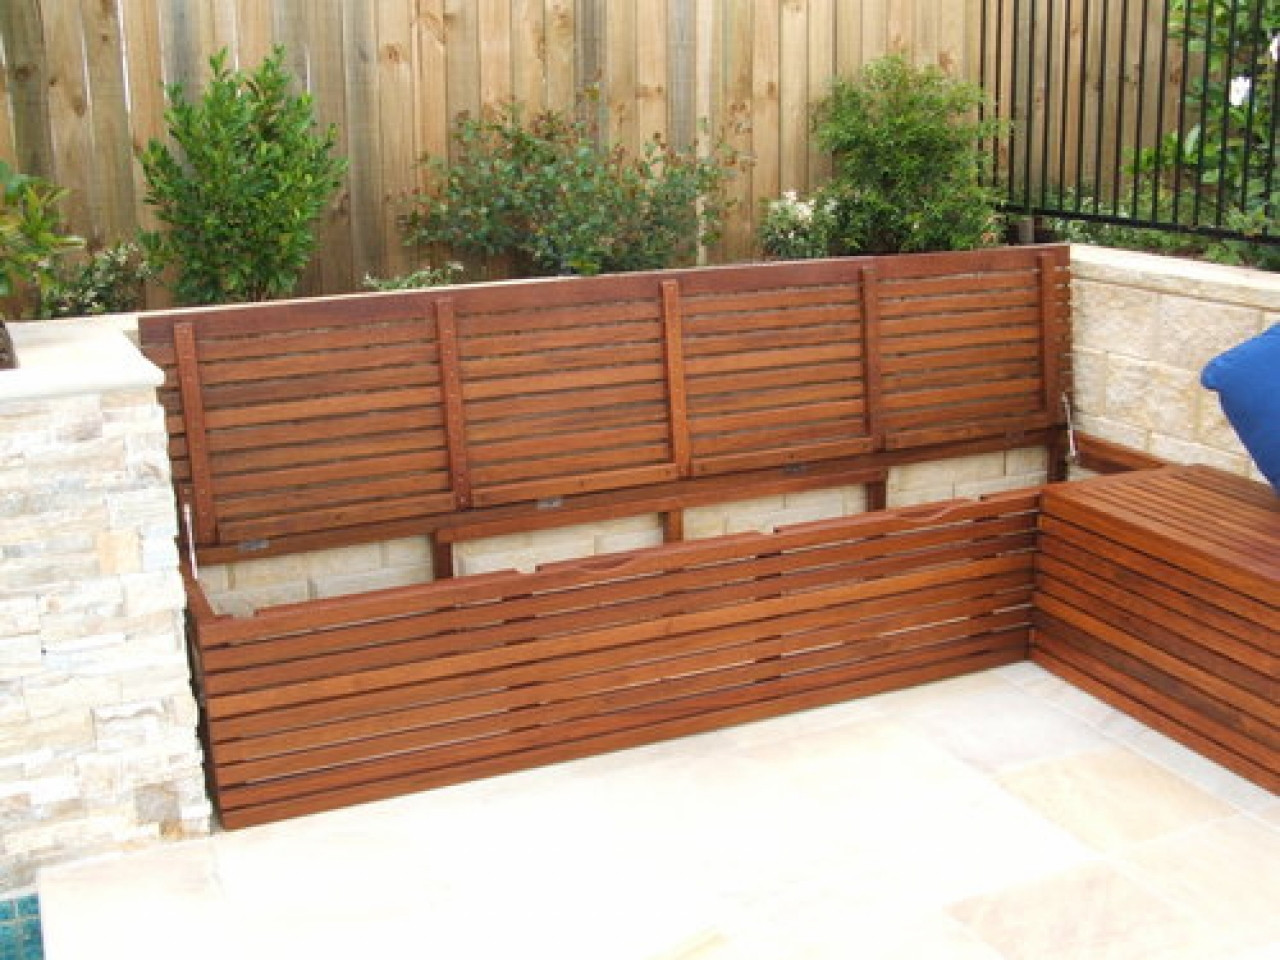 DIY Outdoor Bench Seats
 Diy outdoor storage box outdoor bench seat with storage